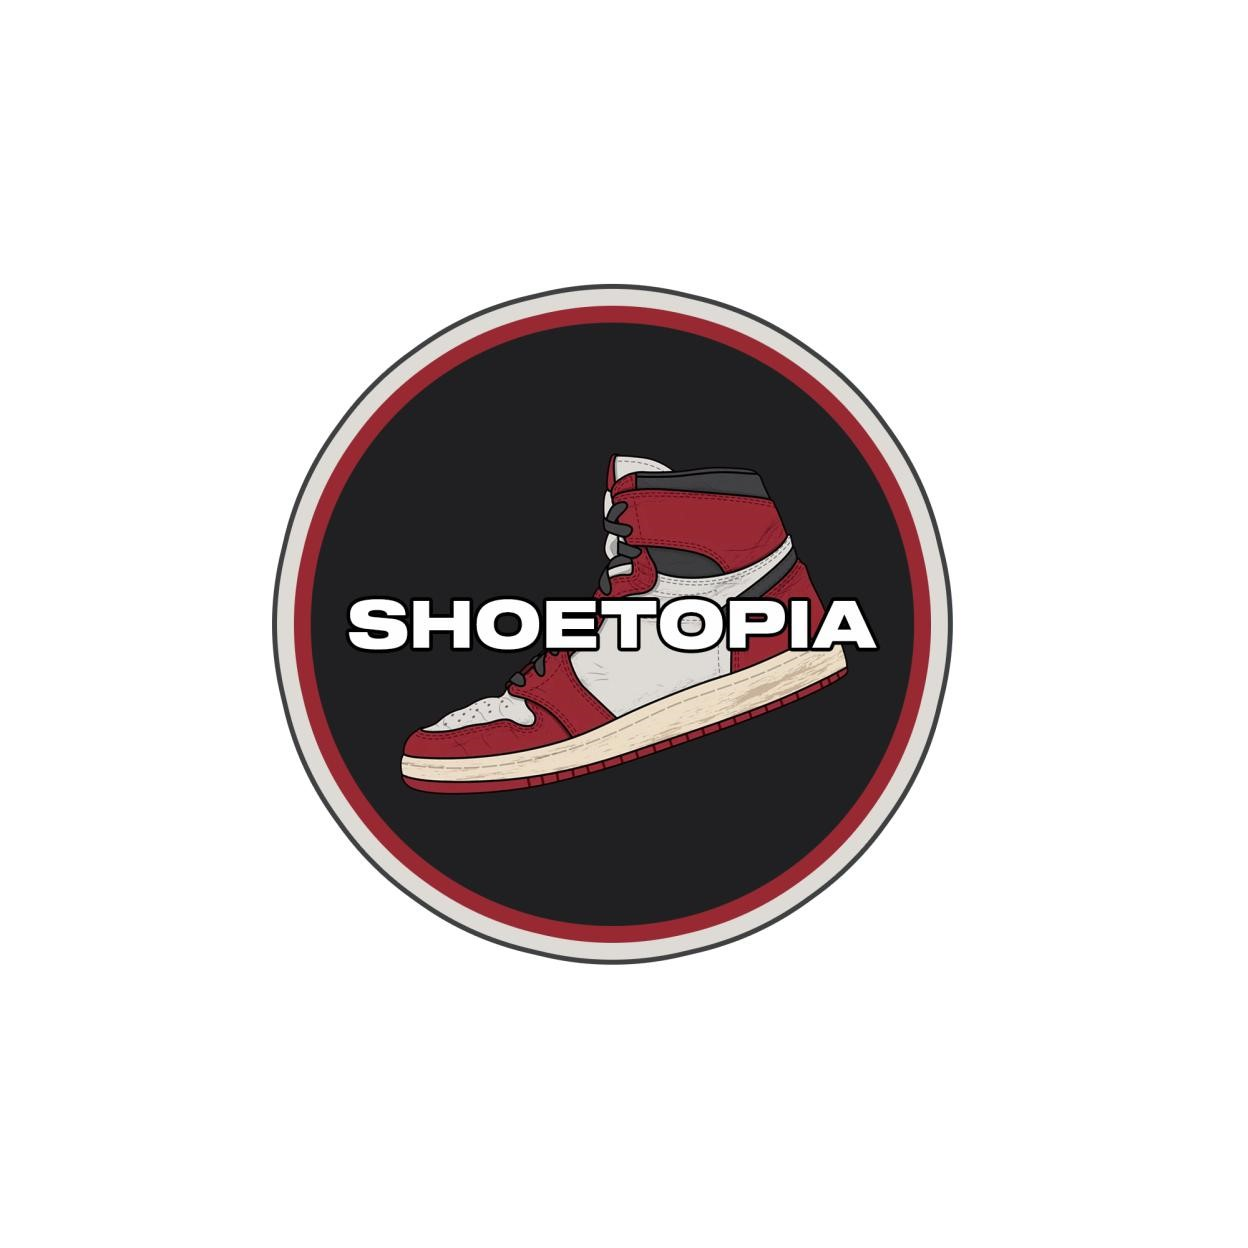 ShoeTopia, Saturday, May 29, 2021, Press release picture